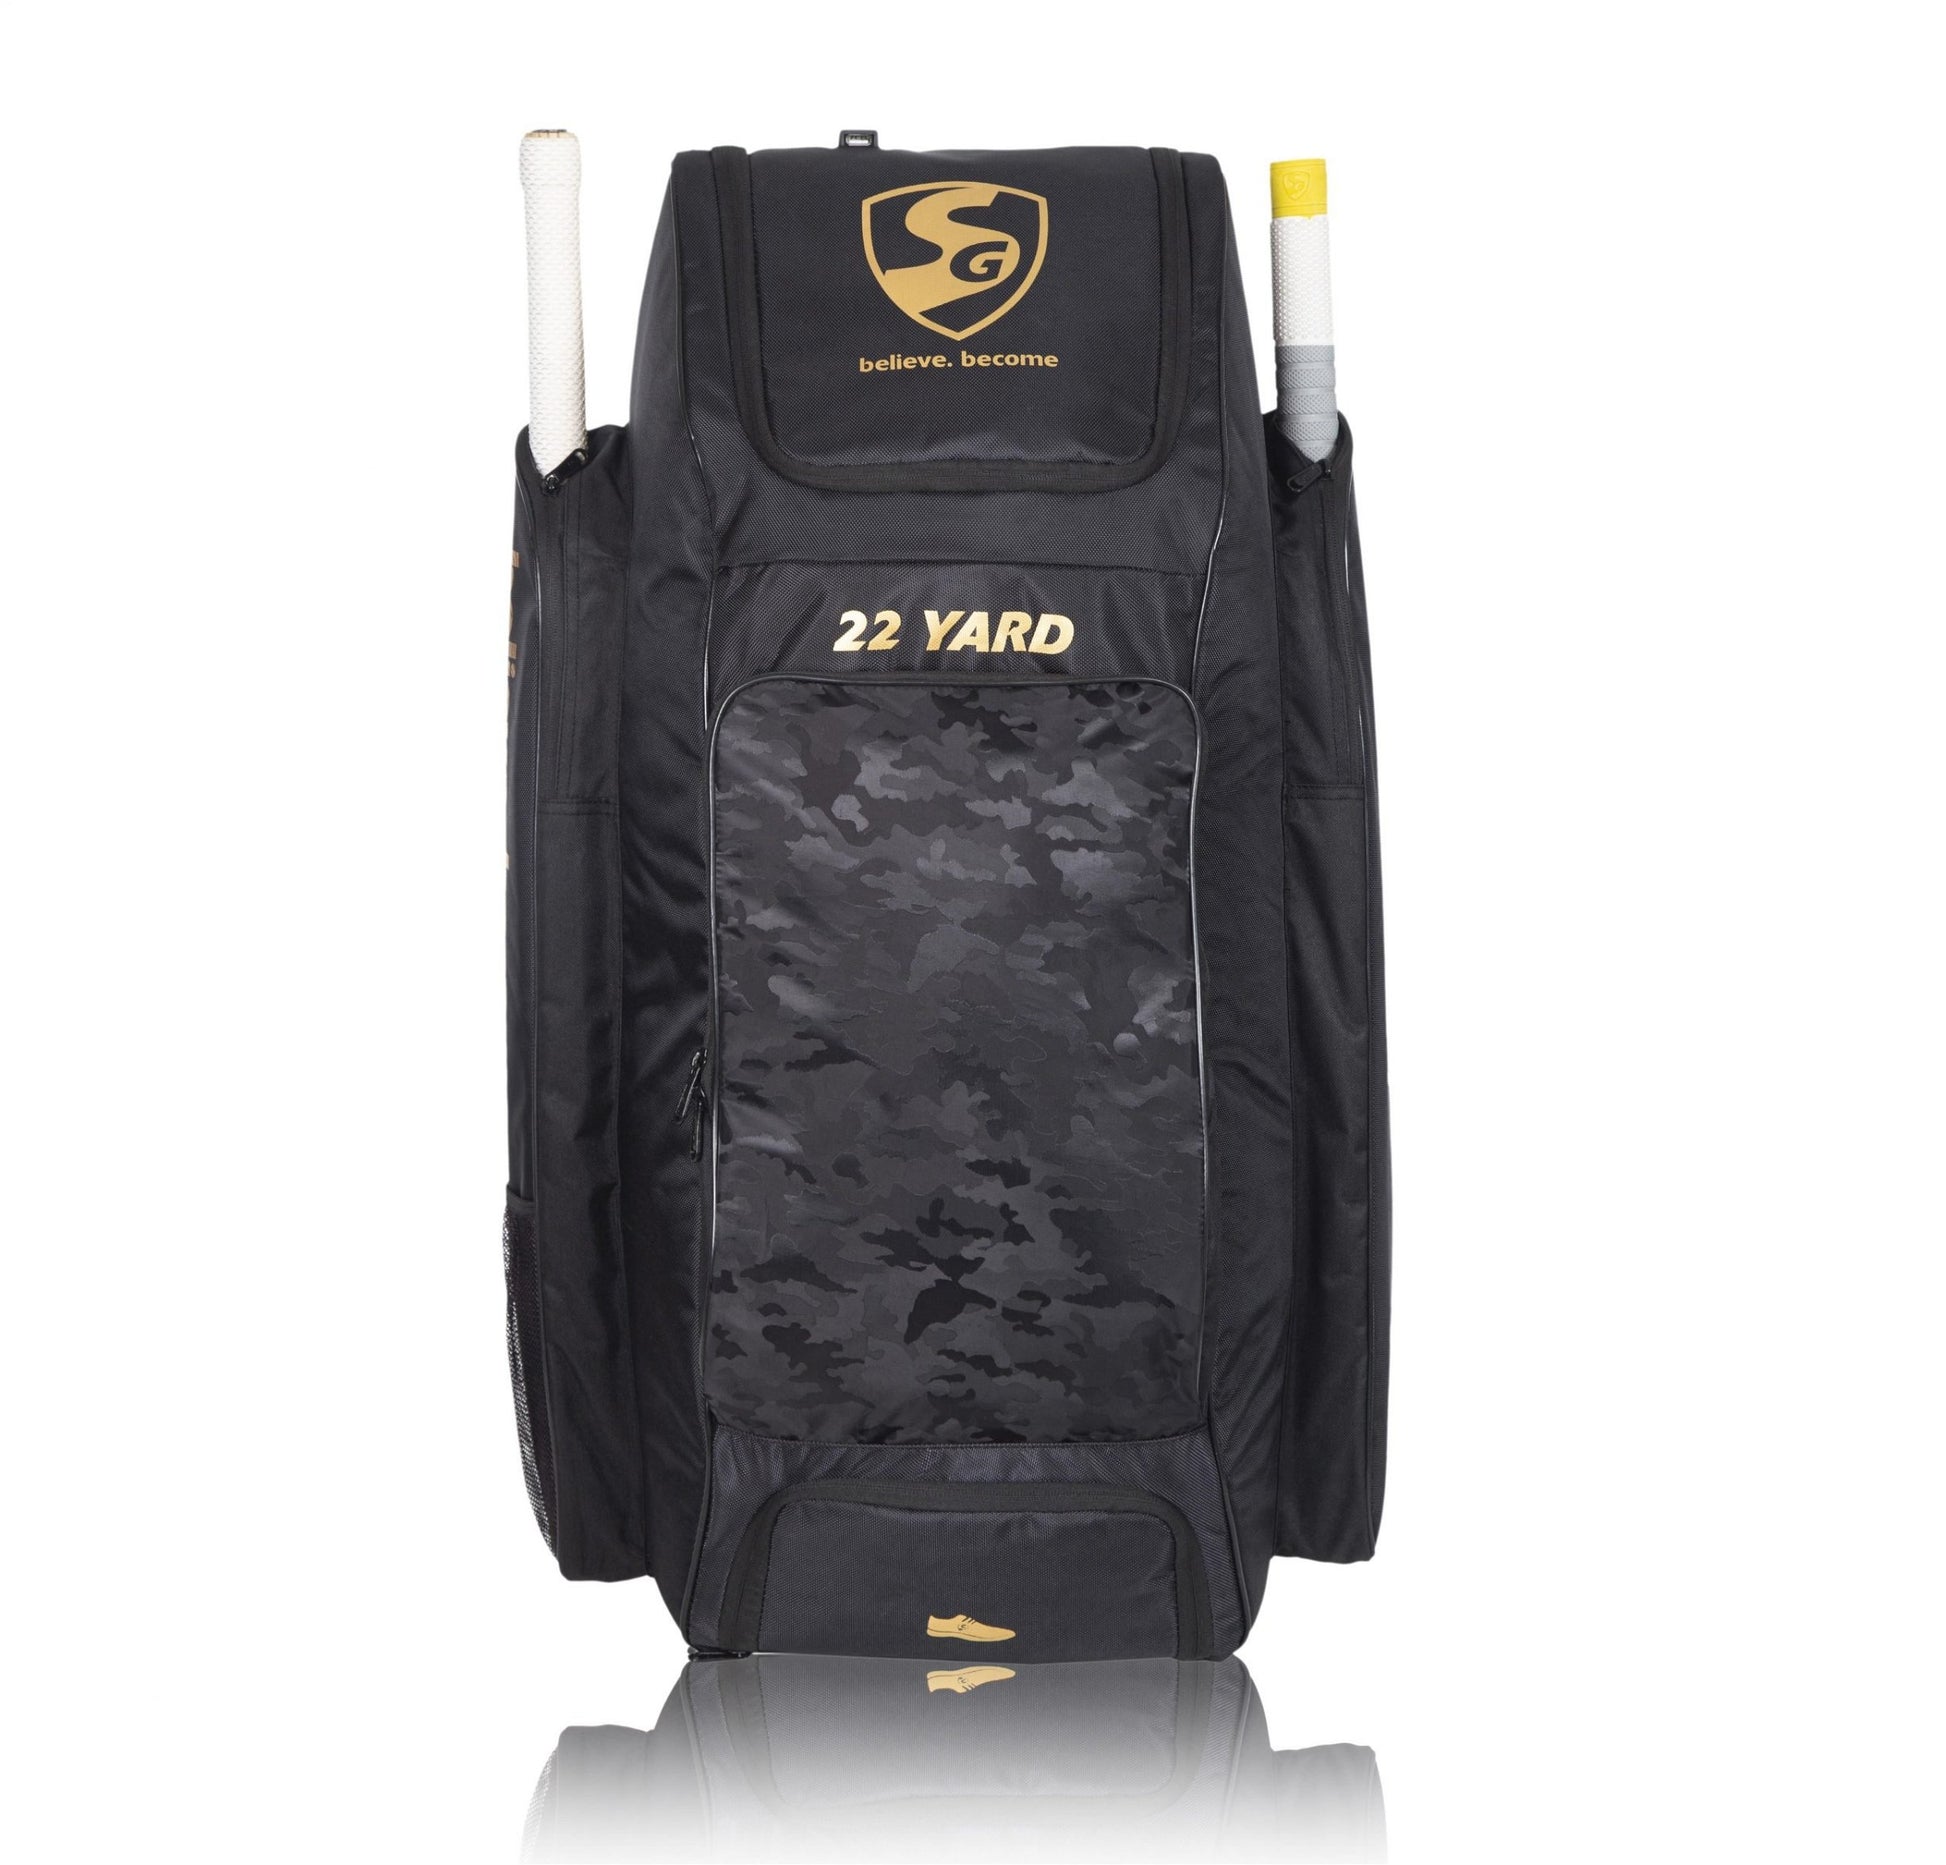 Kit Bag SG 22 YARD DUFFLE